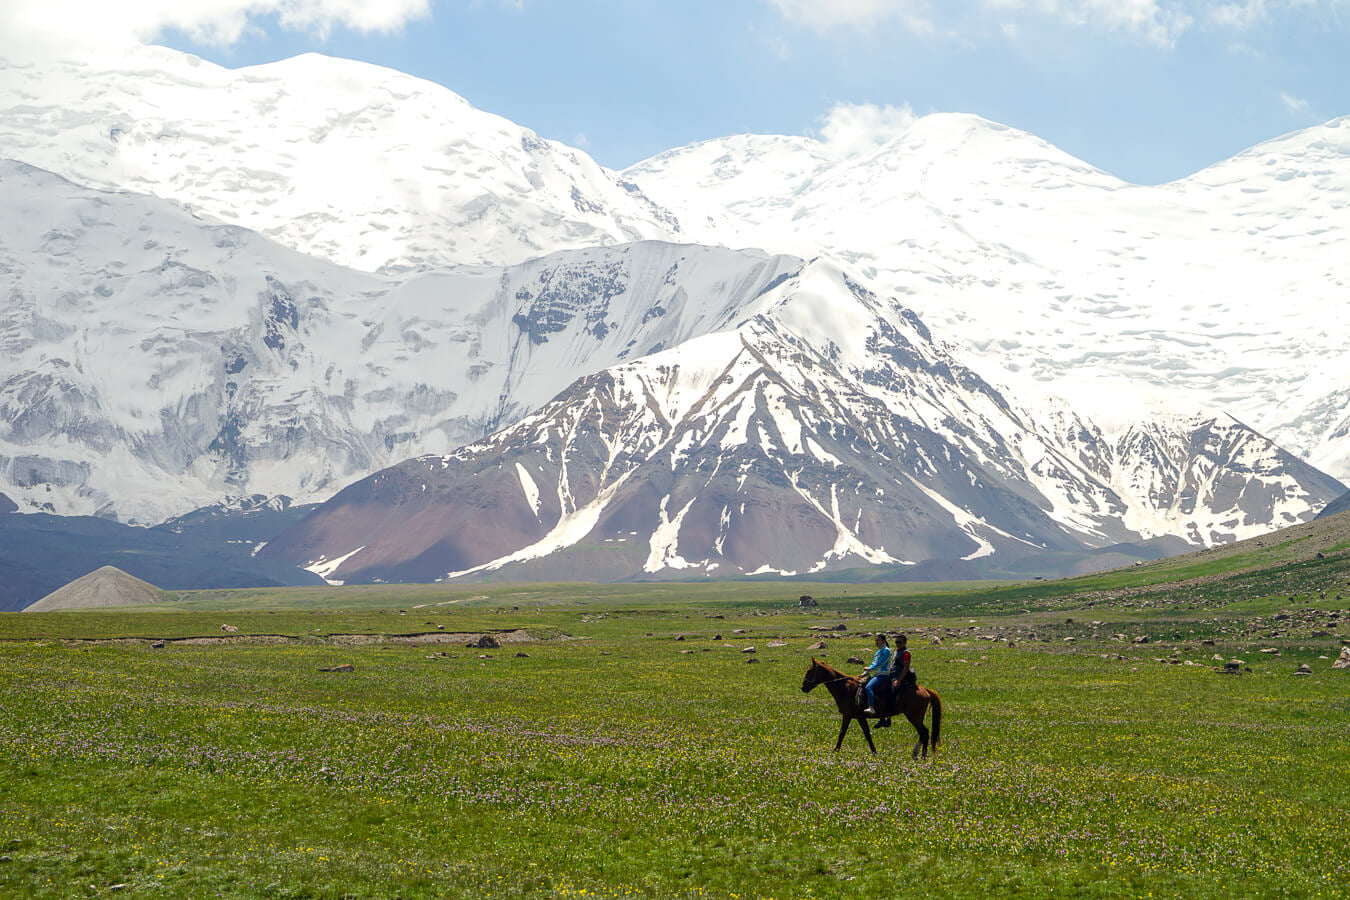 Tới Kyrgyzstan ngắm núi tuyết vĩnh cửu và đi săn cùng đại bàng